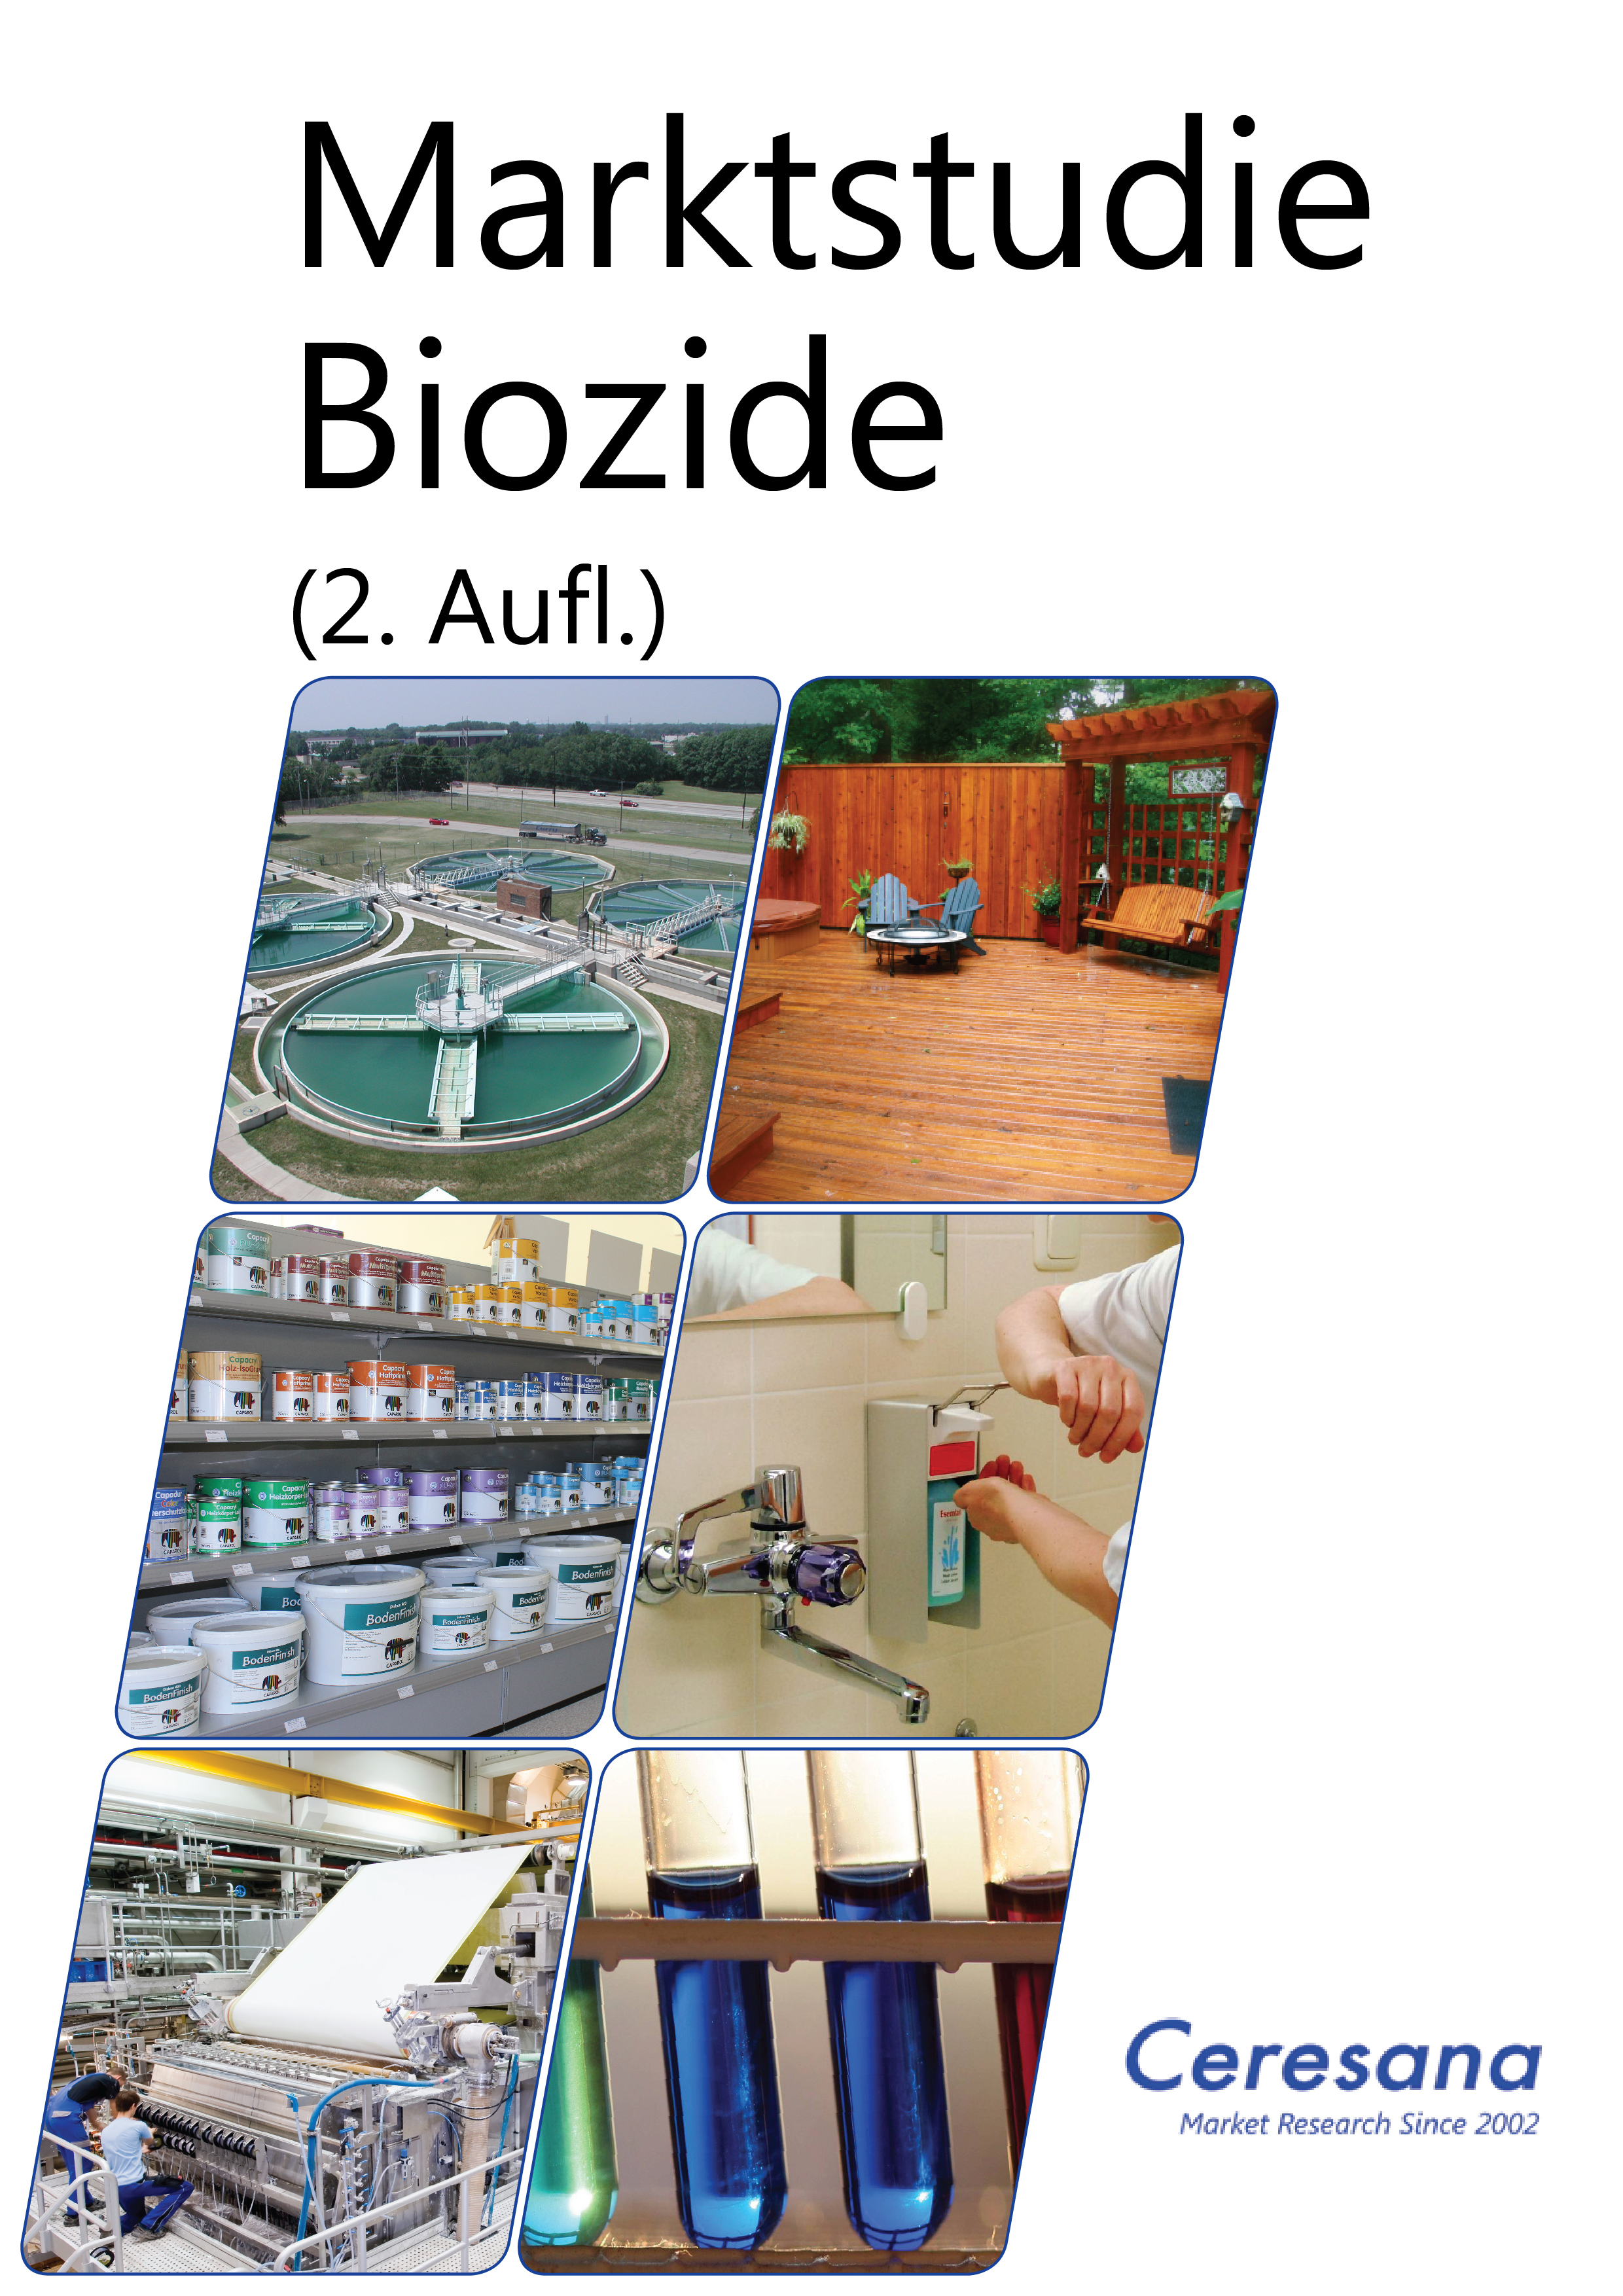 Europa-247.de - Europa Infos & Europa Tipps | Marktstudie Biozide (2. Auflage)